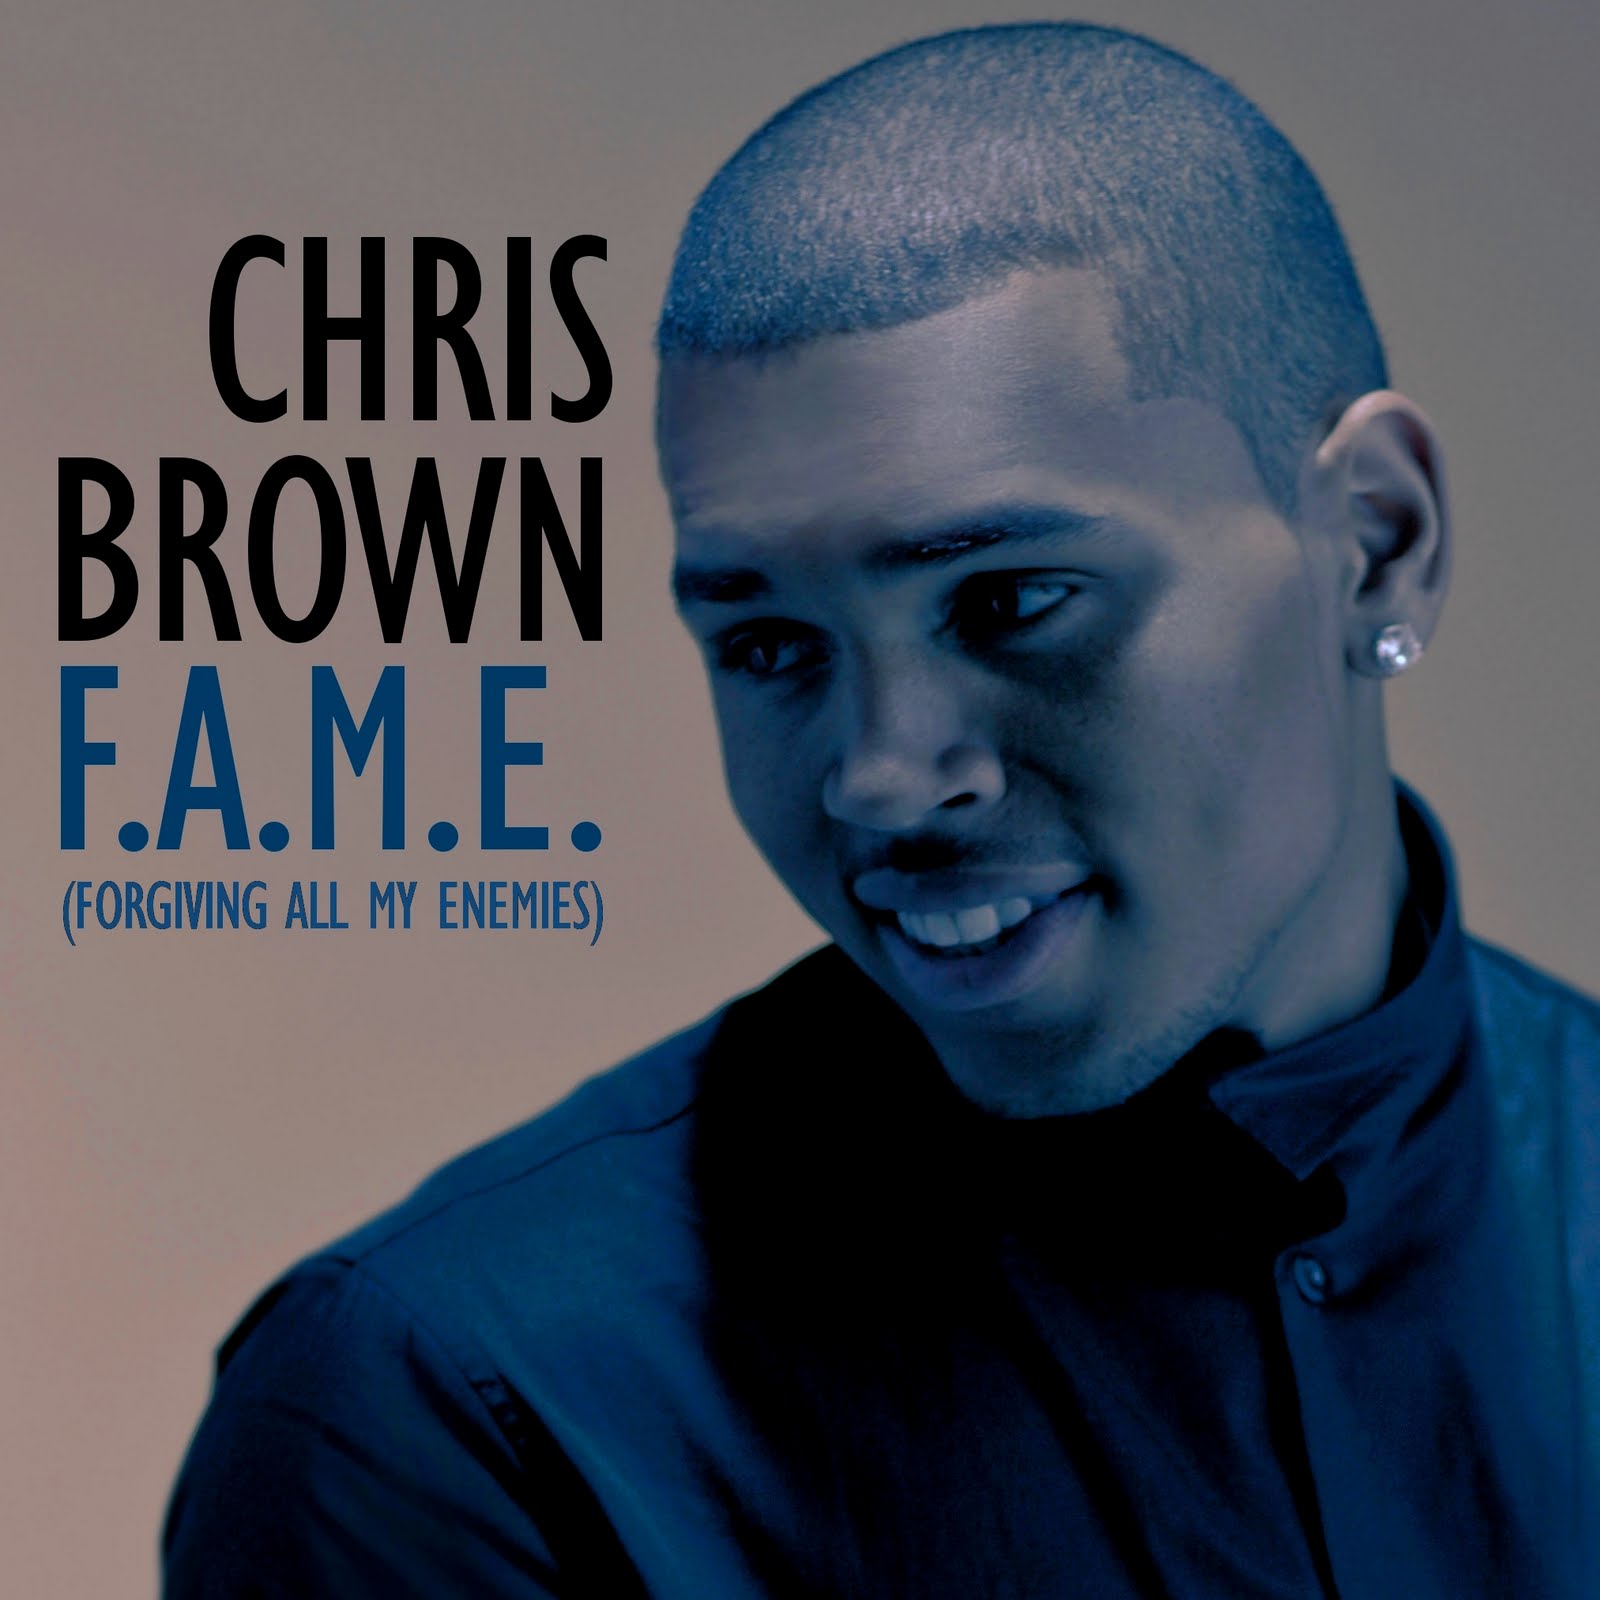 ... Album & Single Cover's: Chris Brown - F.A.M.E. (FanMade Album Cover